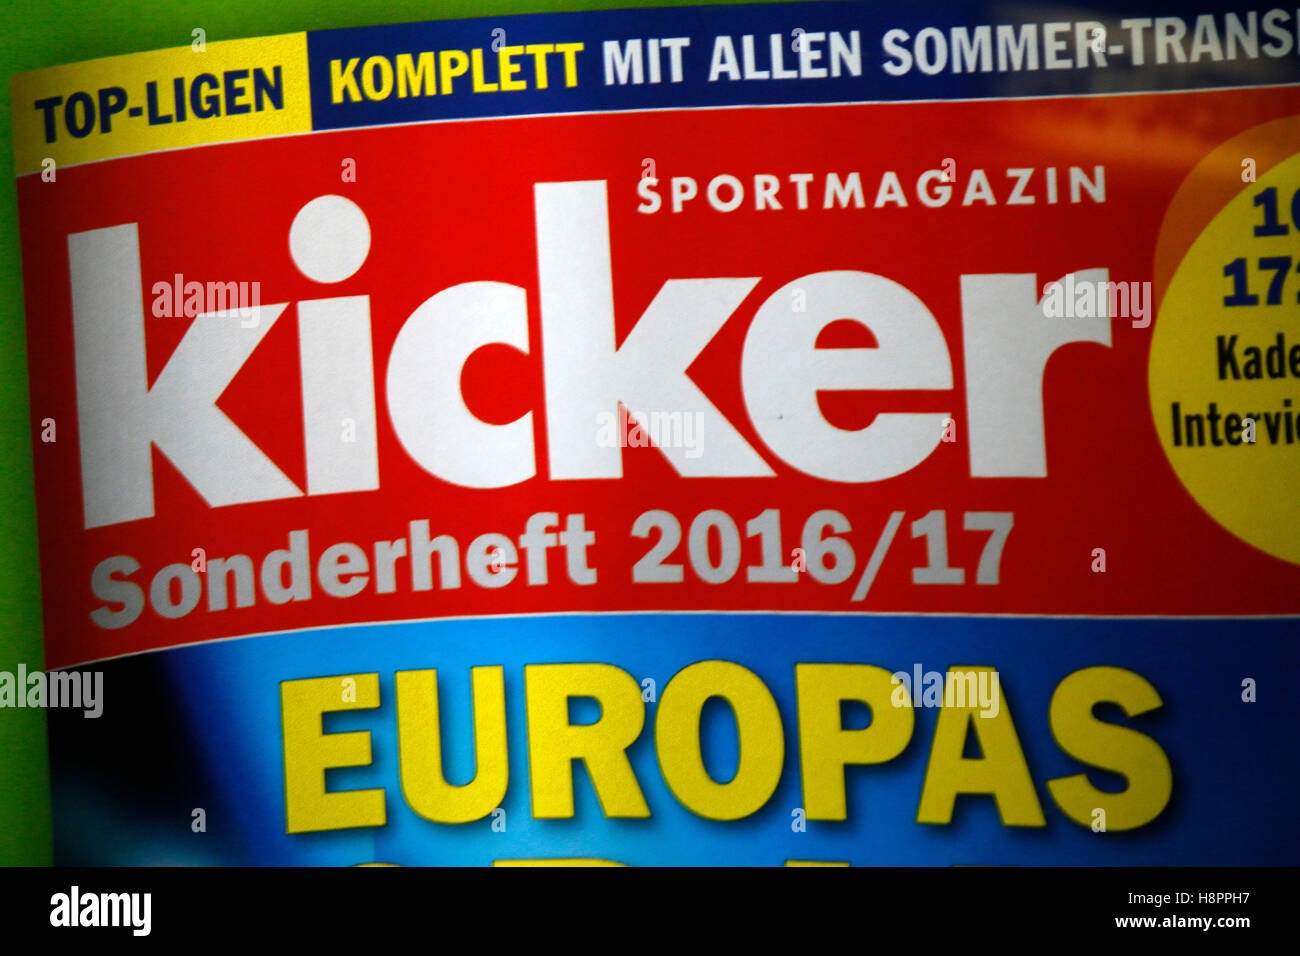 Das Logo der Marke "kicker", Berlino. Foto Stock